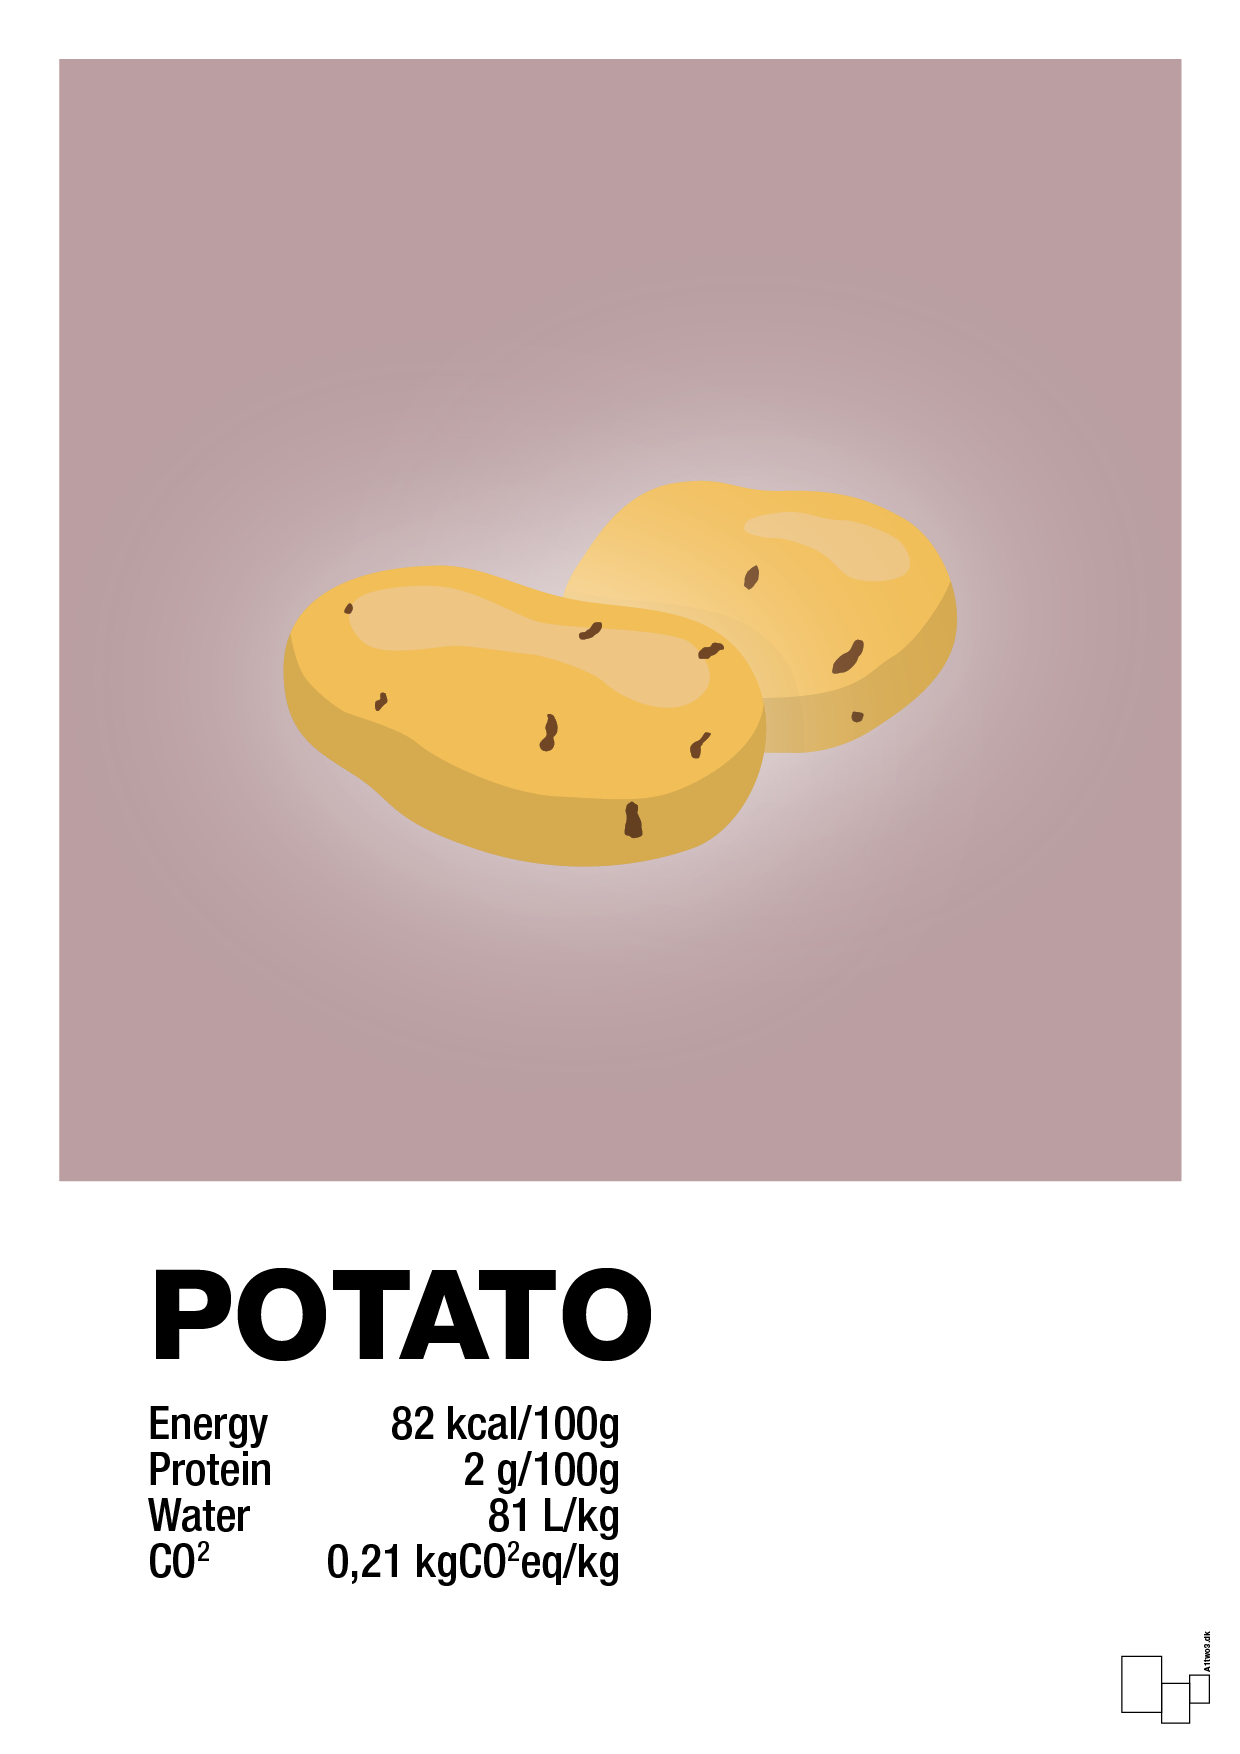 potato nutrition og miljø - Plakat med Mad & Drikke i Light Rose